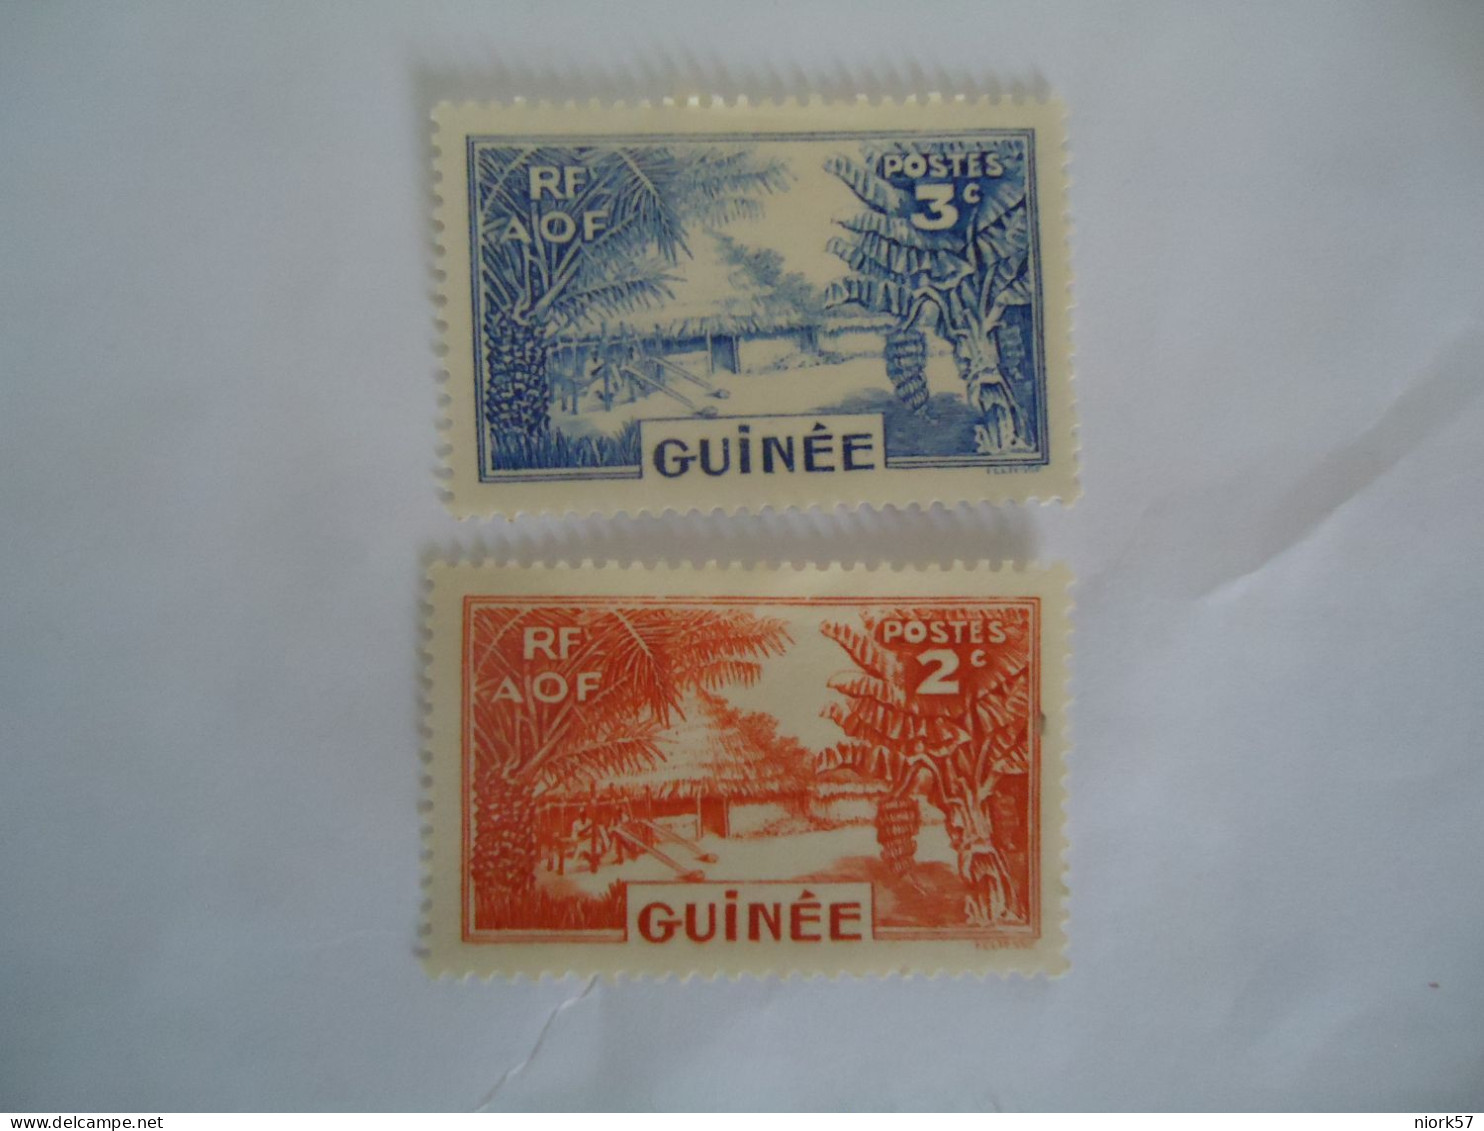 GUINEE  GUINEA  MLN STAMPS 2 LANDSCAPES - República De Guinea (1958-...)